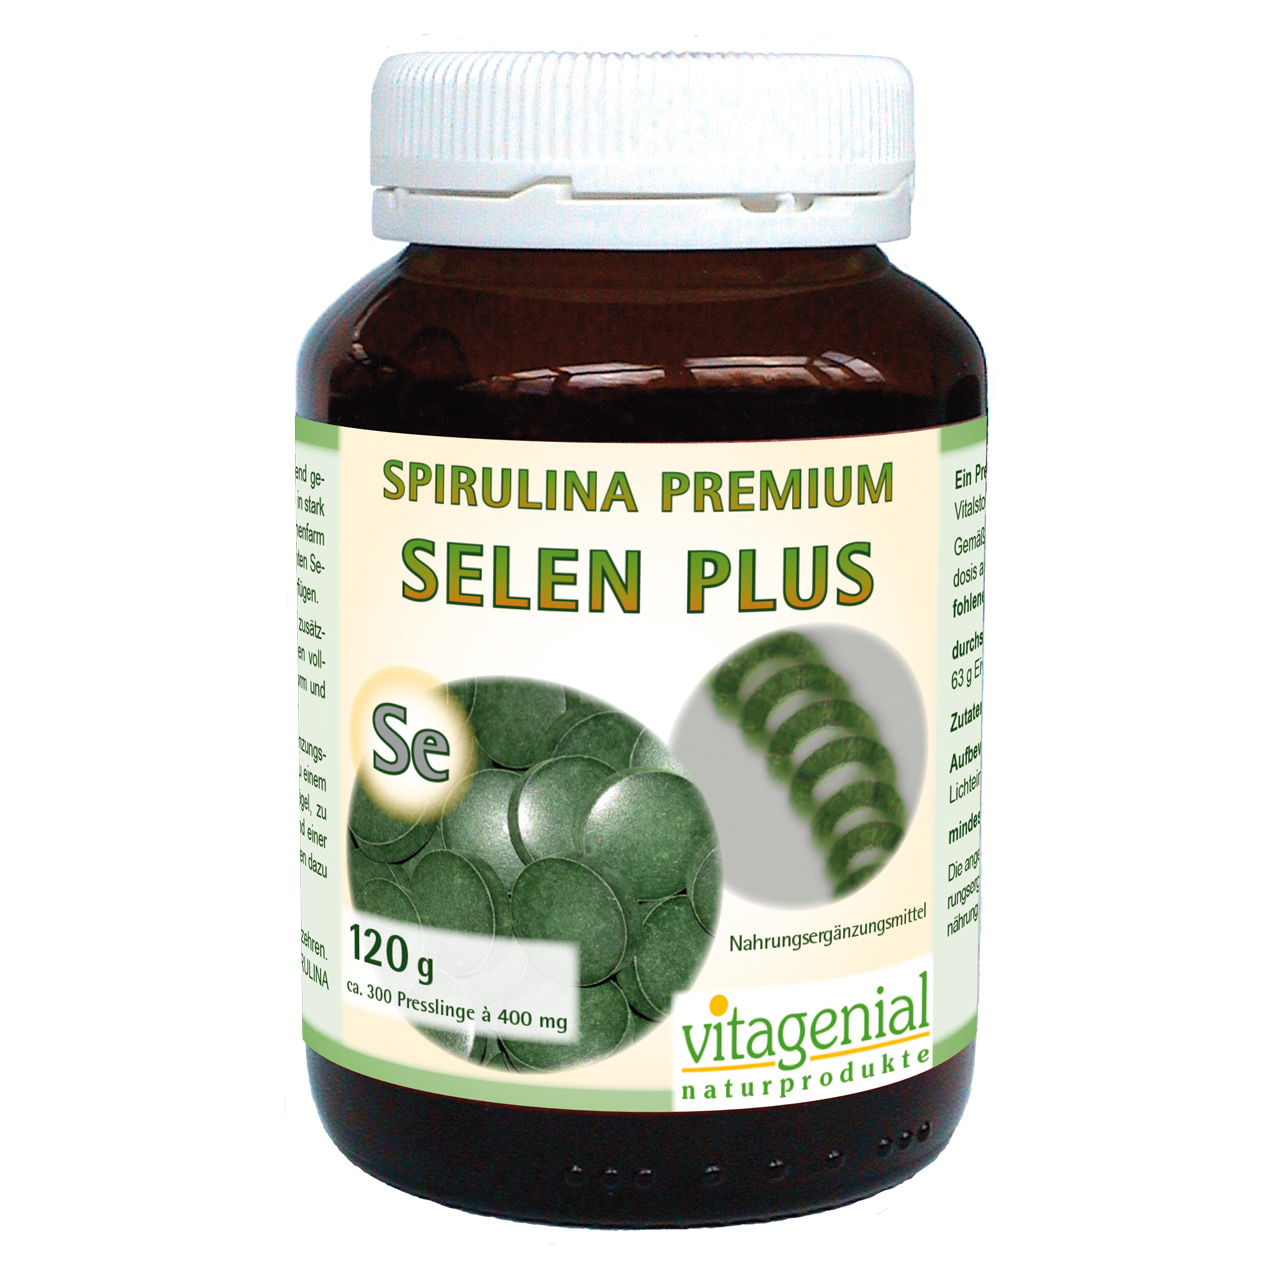 Vitagenial Spirulina Premium Selen Plus in 120 Gramm Version beinhaltet 300 Presslinge